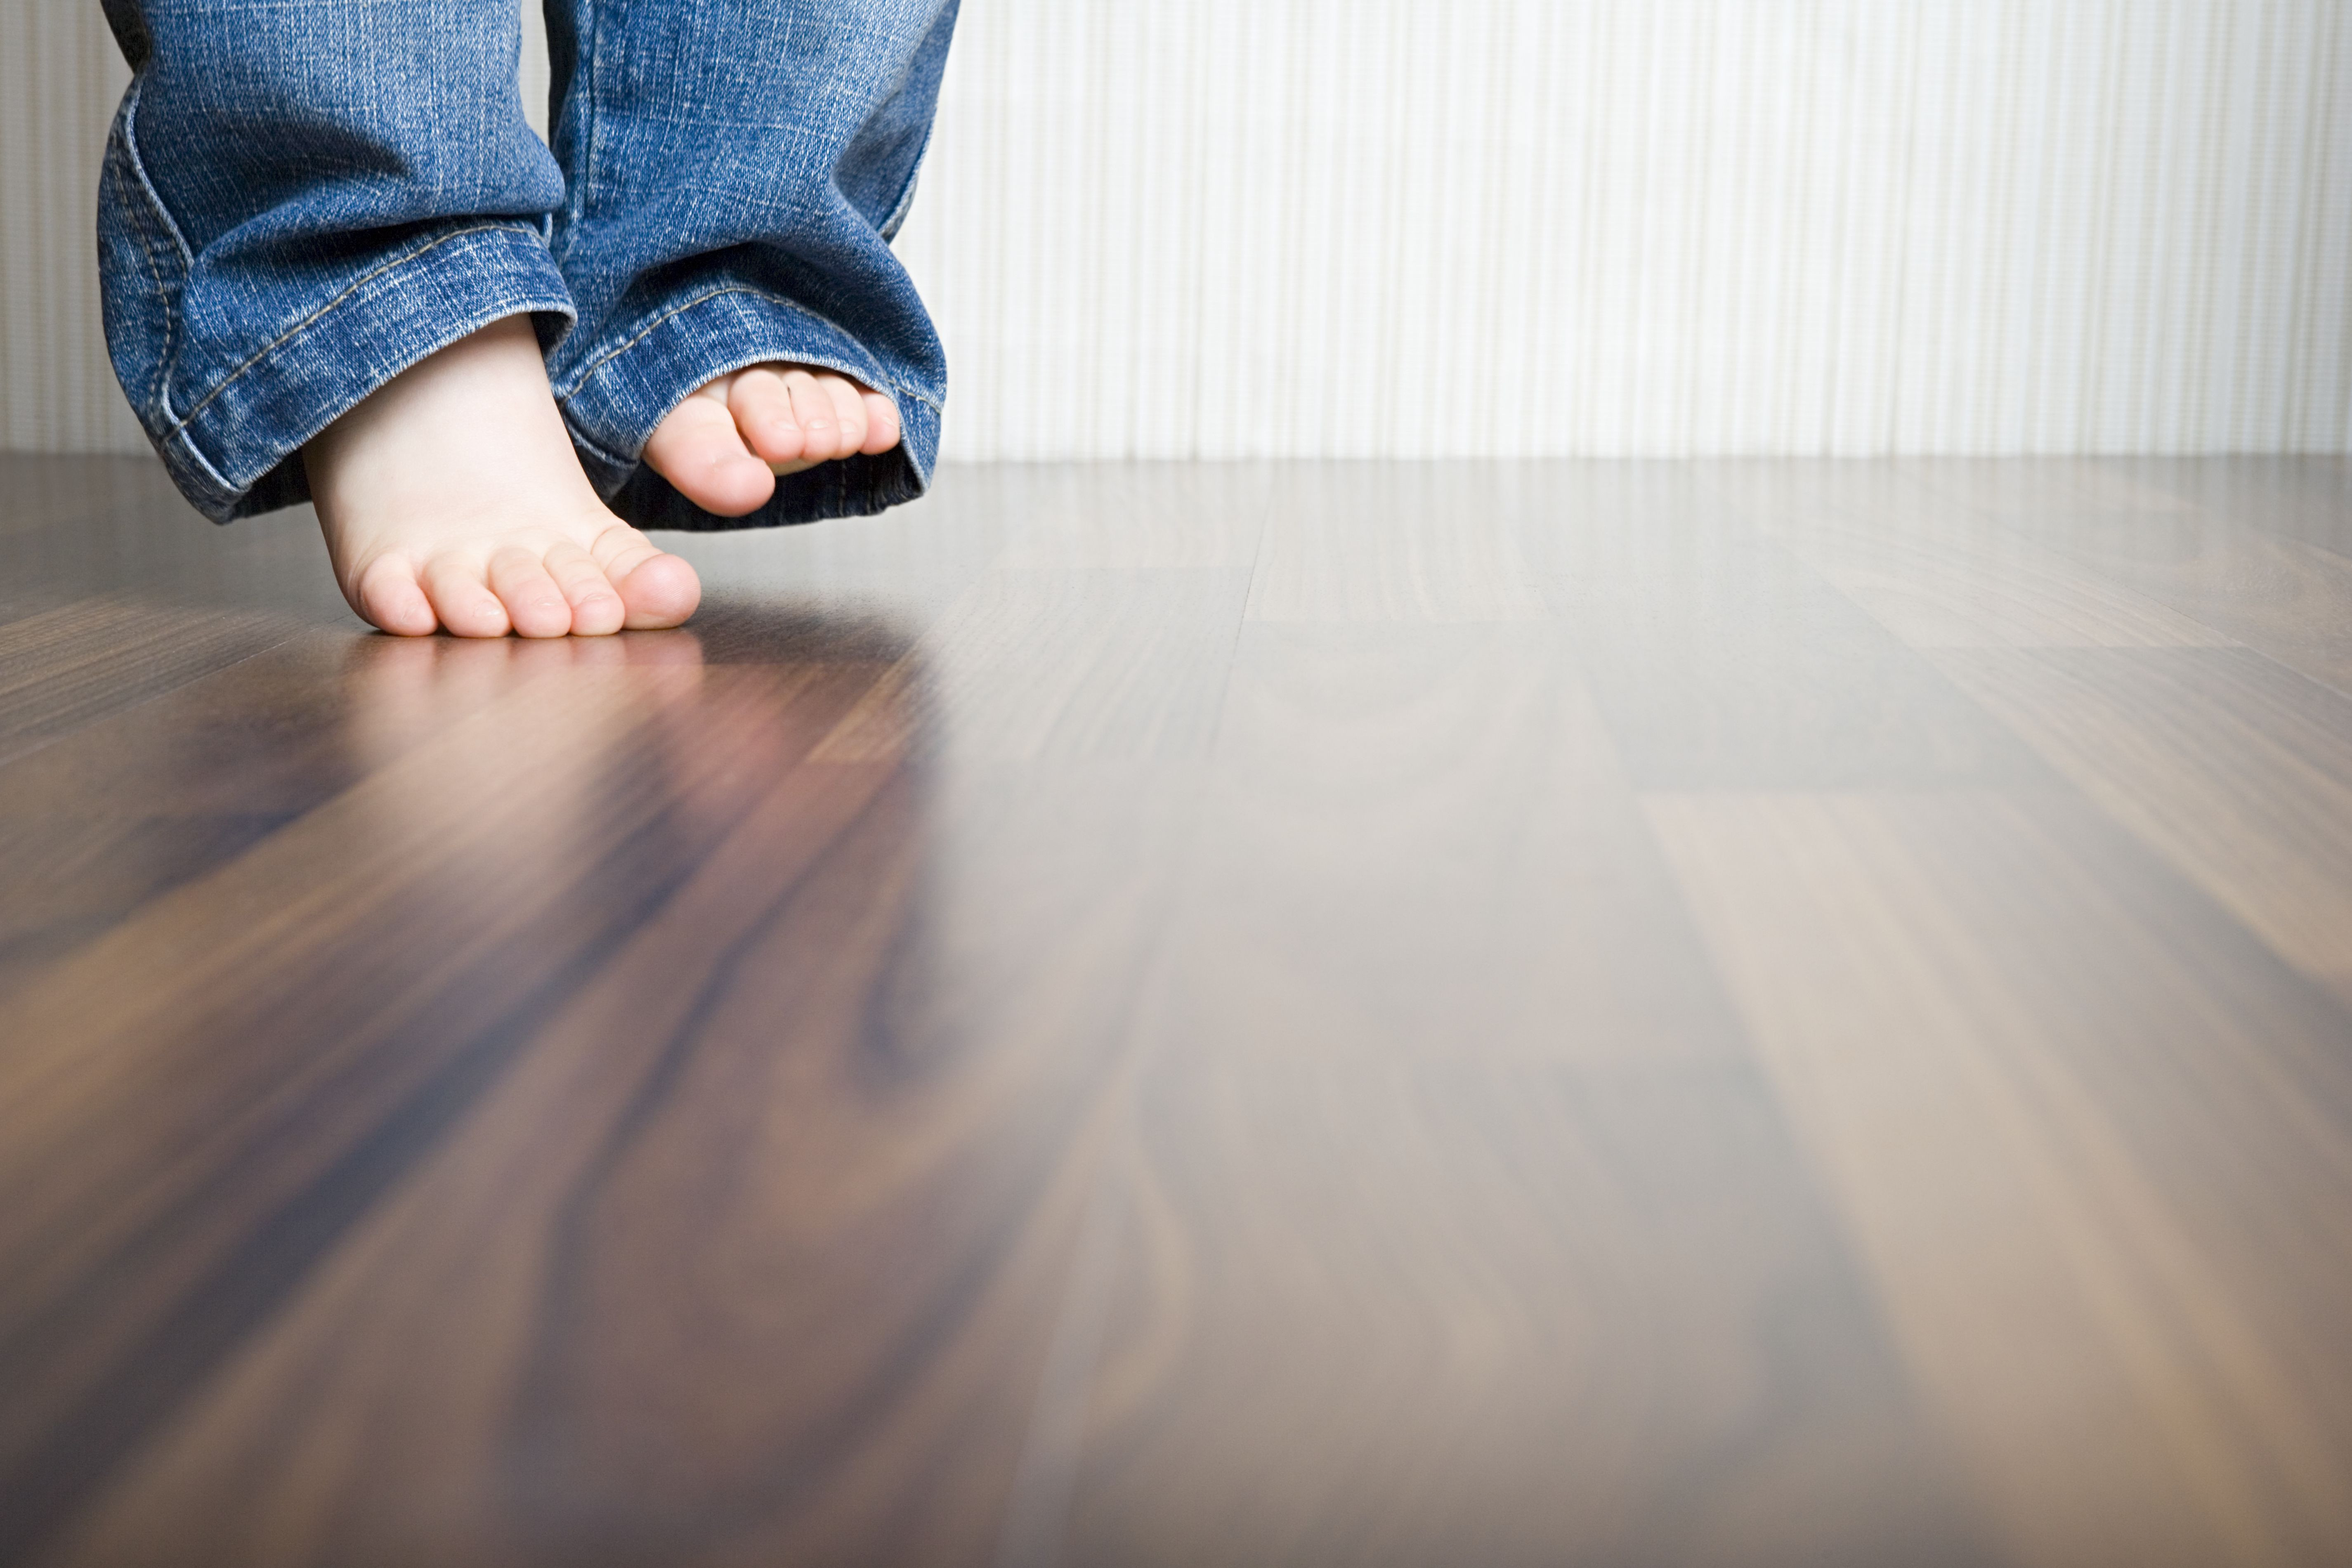 how to refill bona hardwood floor cleaner of how to clean hardwood floors best way to clean wood flooring in 1512149908 gettyimages 75403973